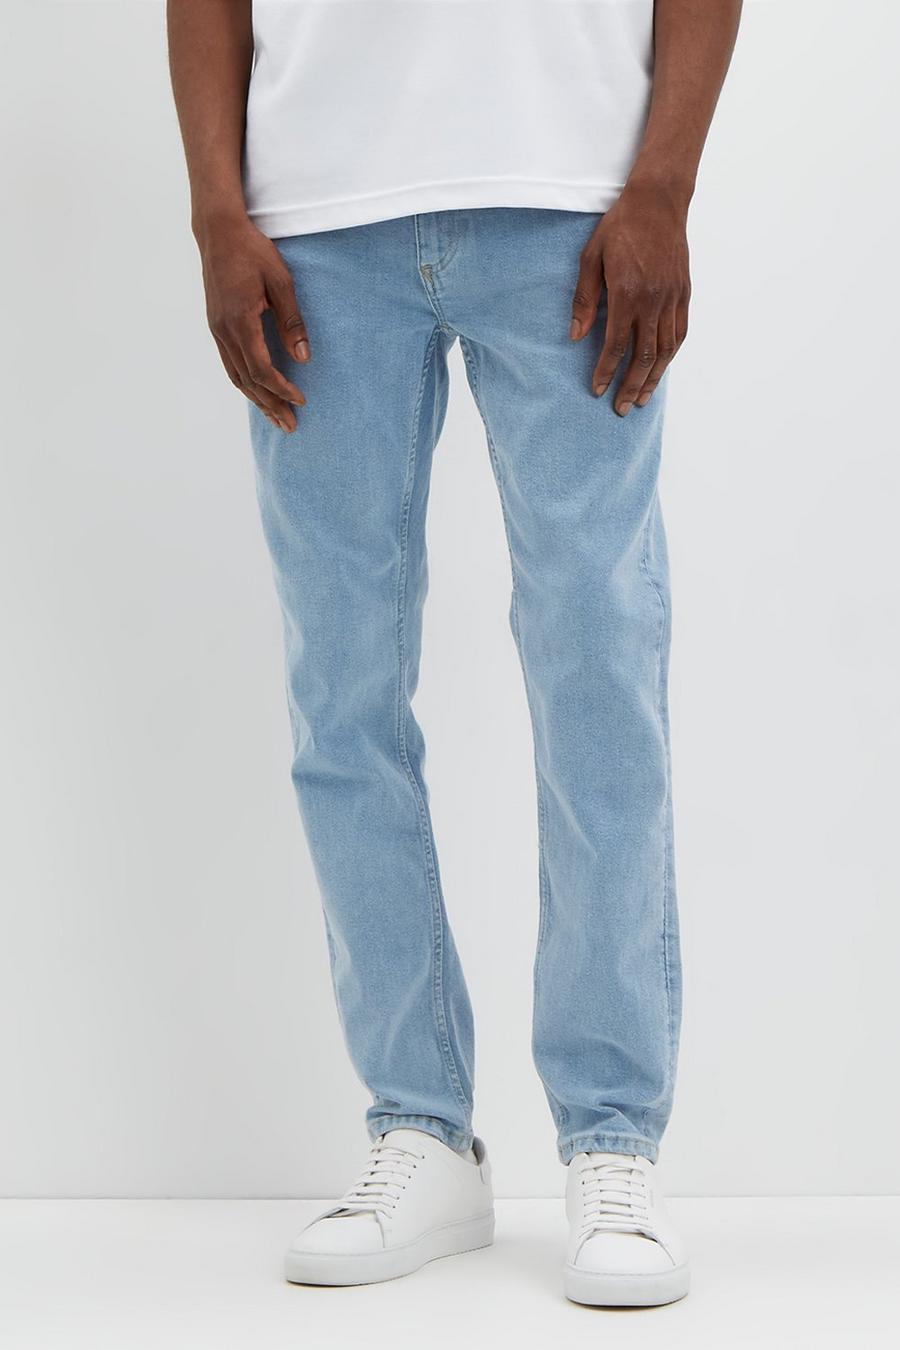 Skinny Light Blue Wash Jeans